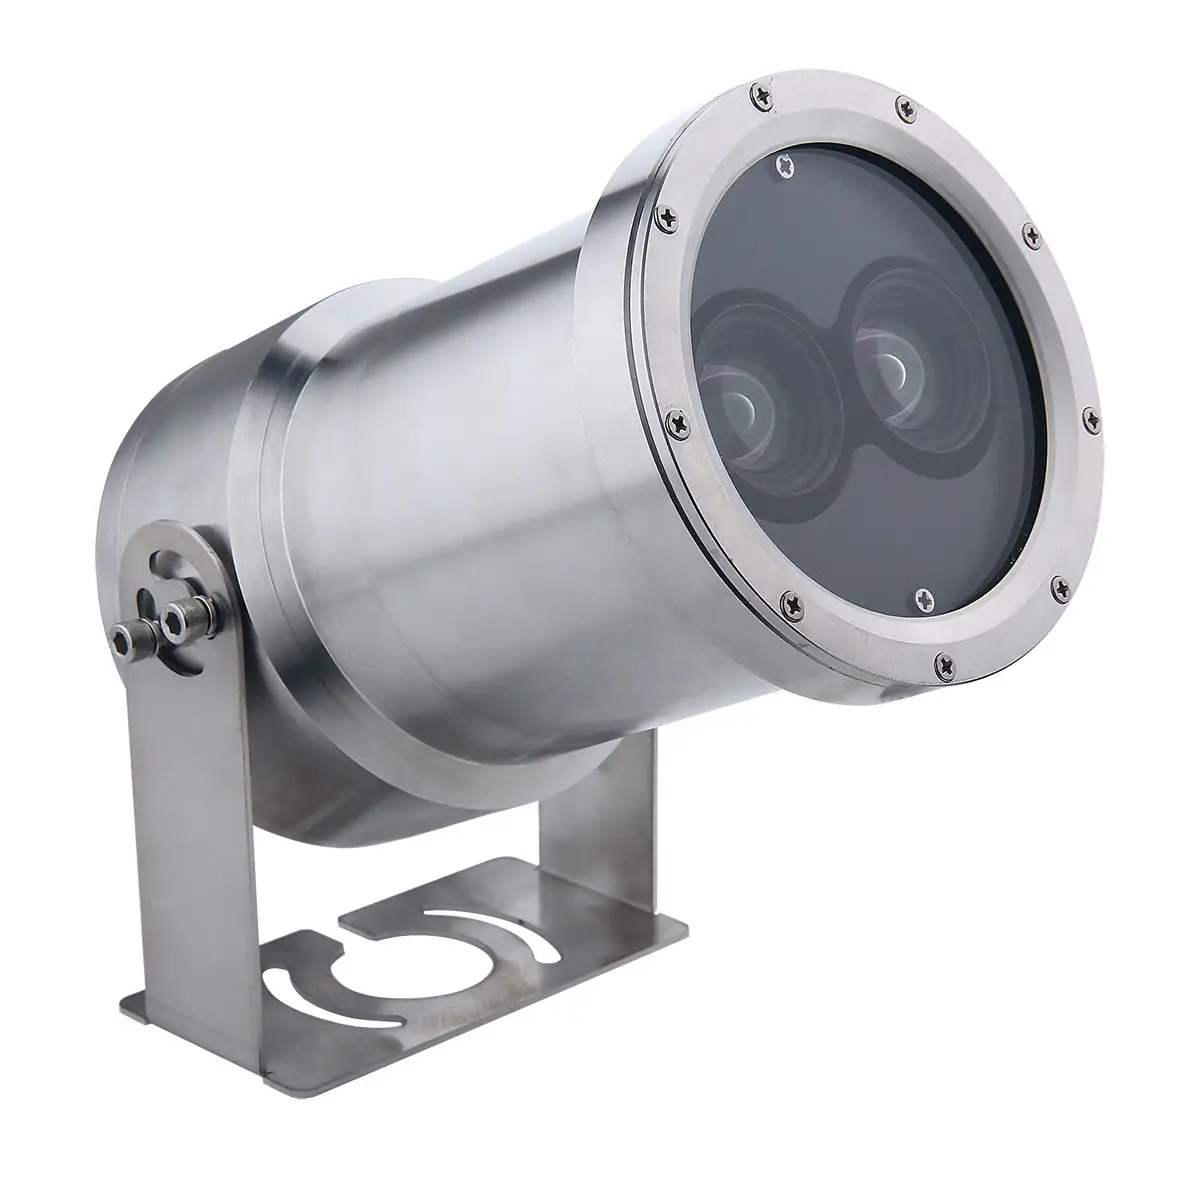 Câmera ip submarina de hd barlus pode ser utilizada para análise ai em locais industriais